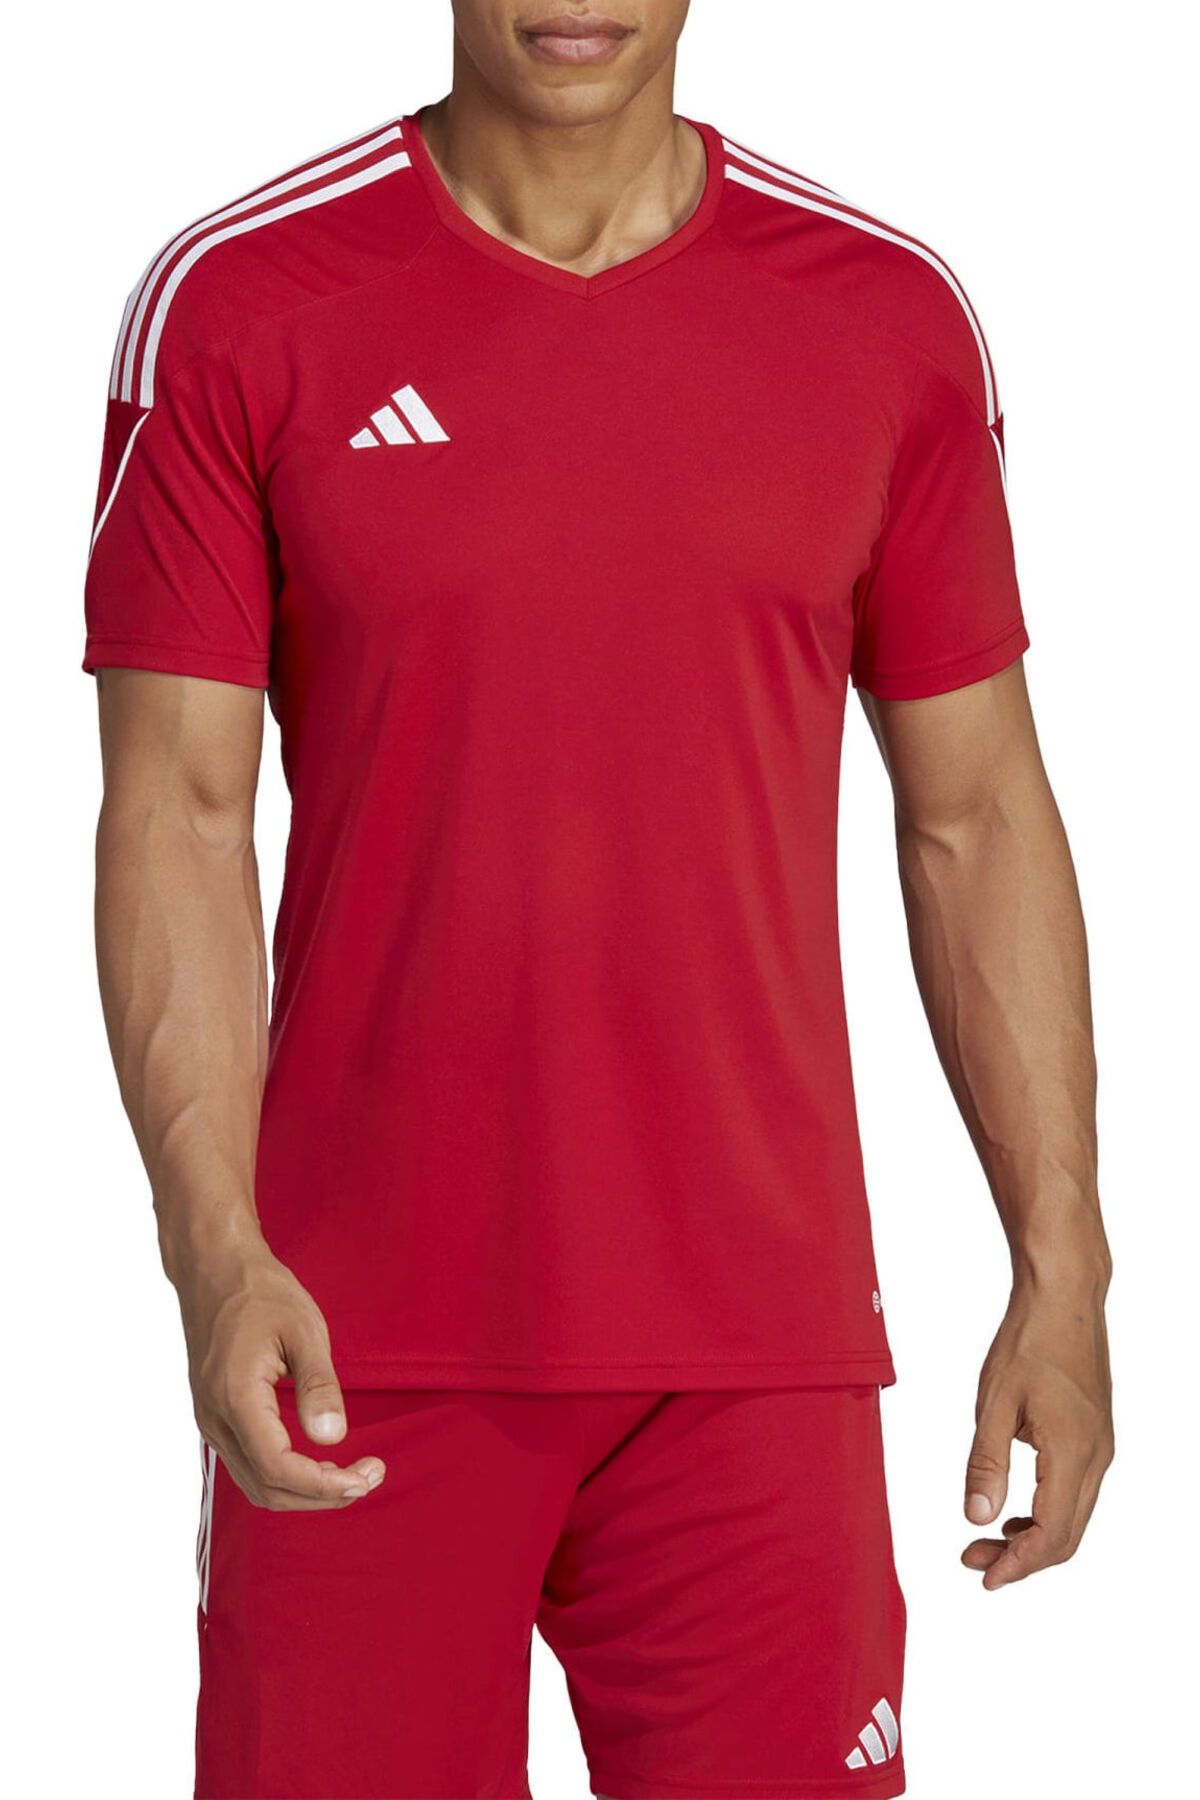 adidas Erkek Günlük Kullanıma ve Spora Uygun Antrenman T-shirt Rahat Düz Tişört